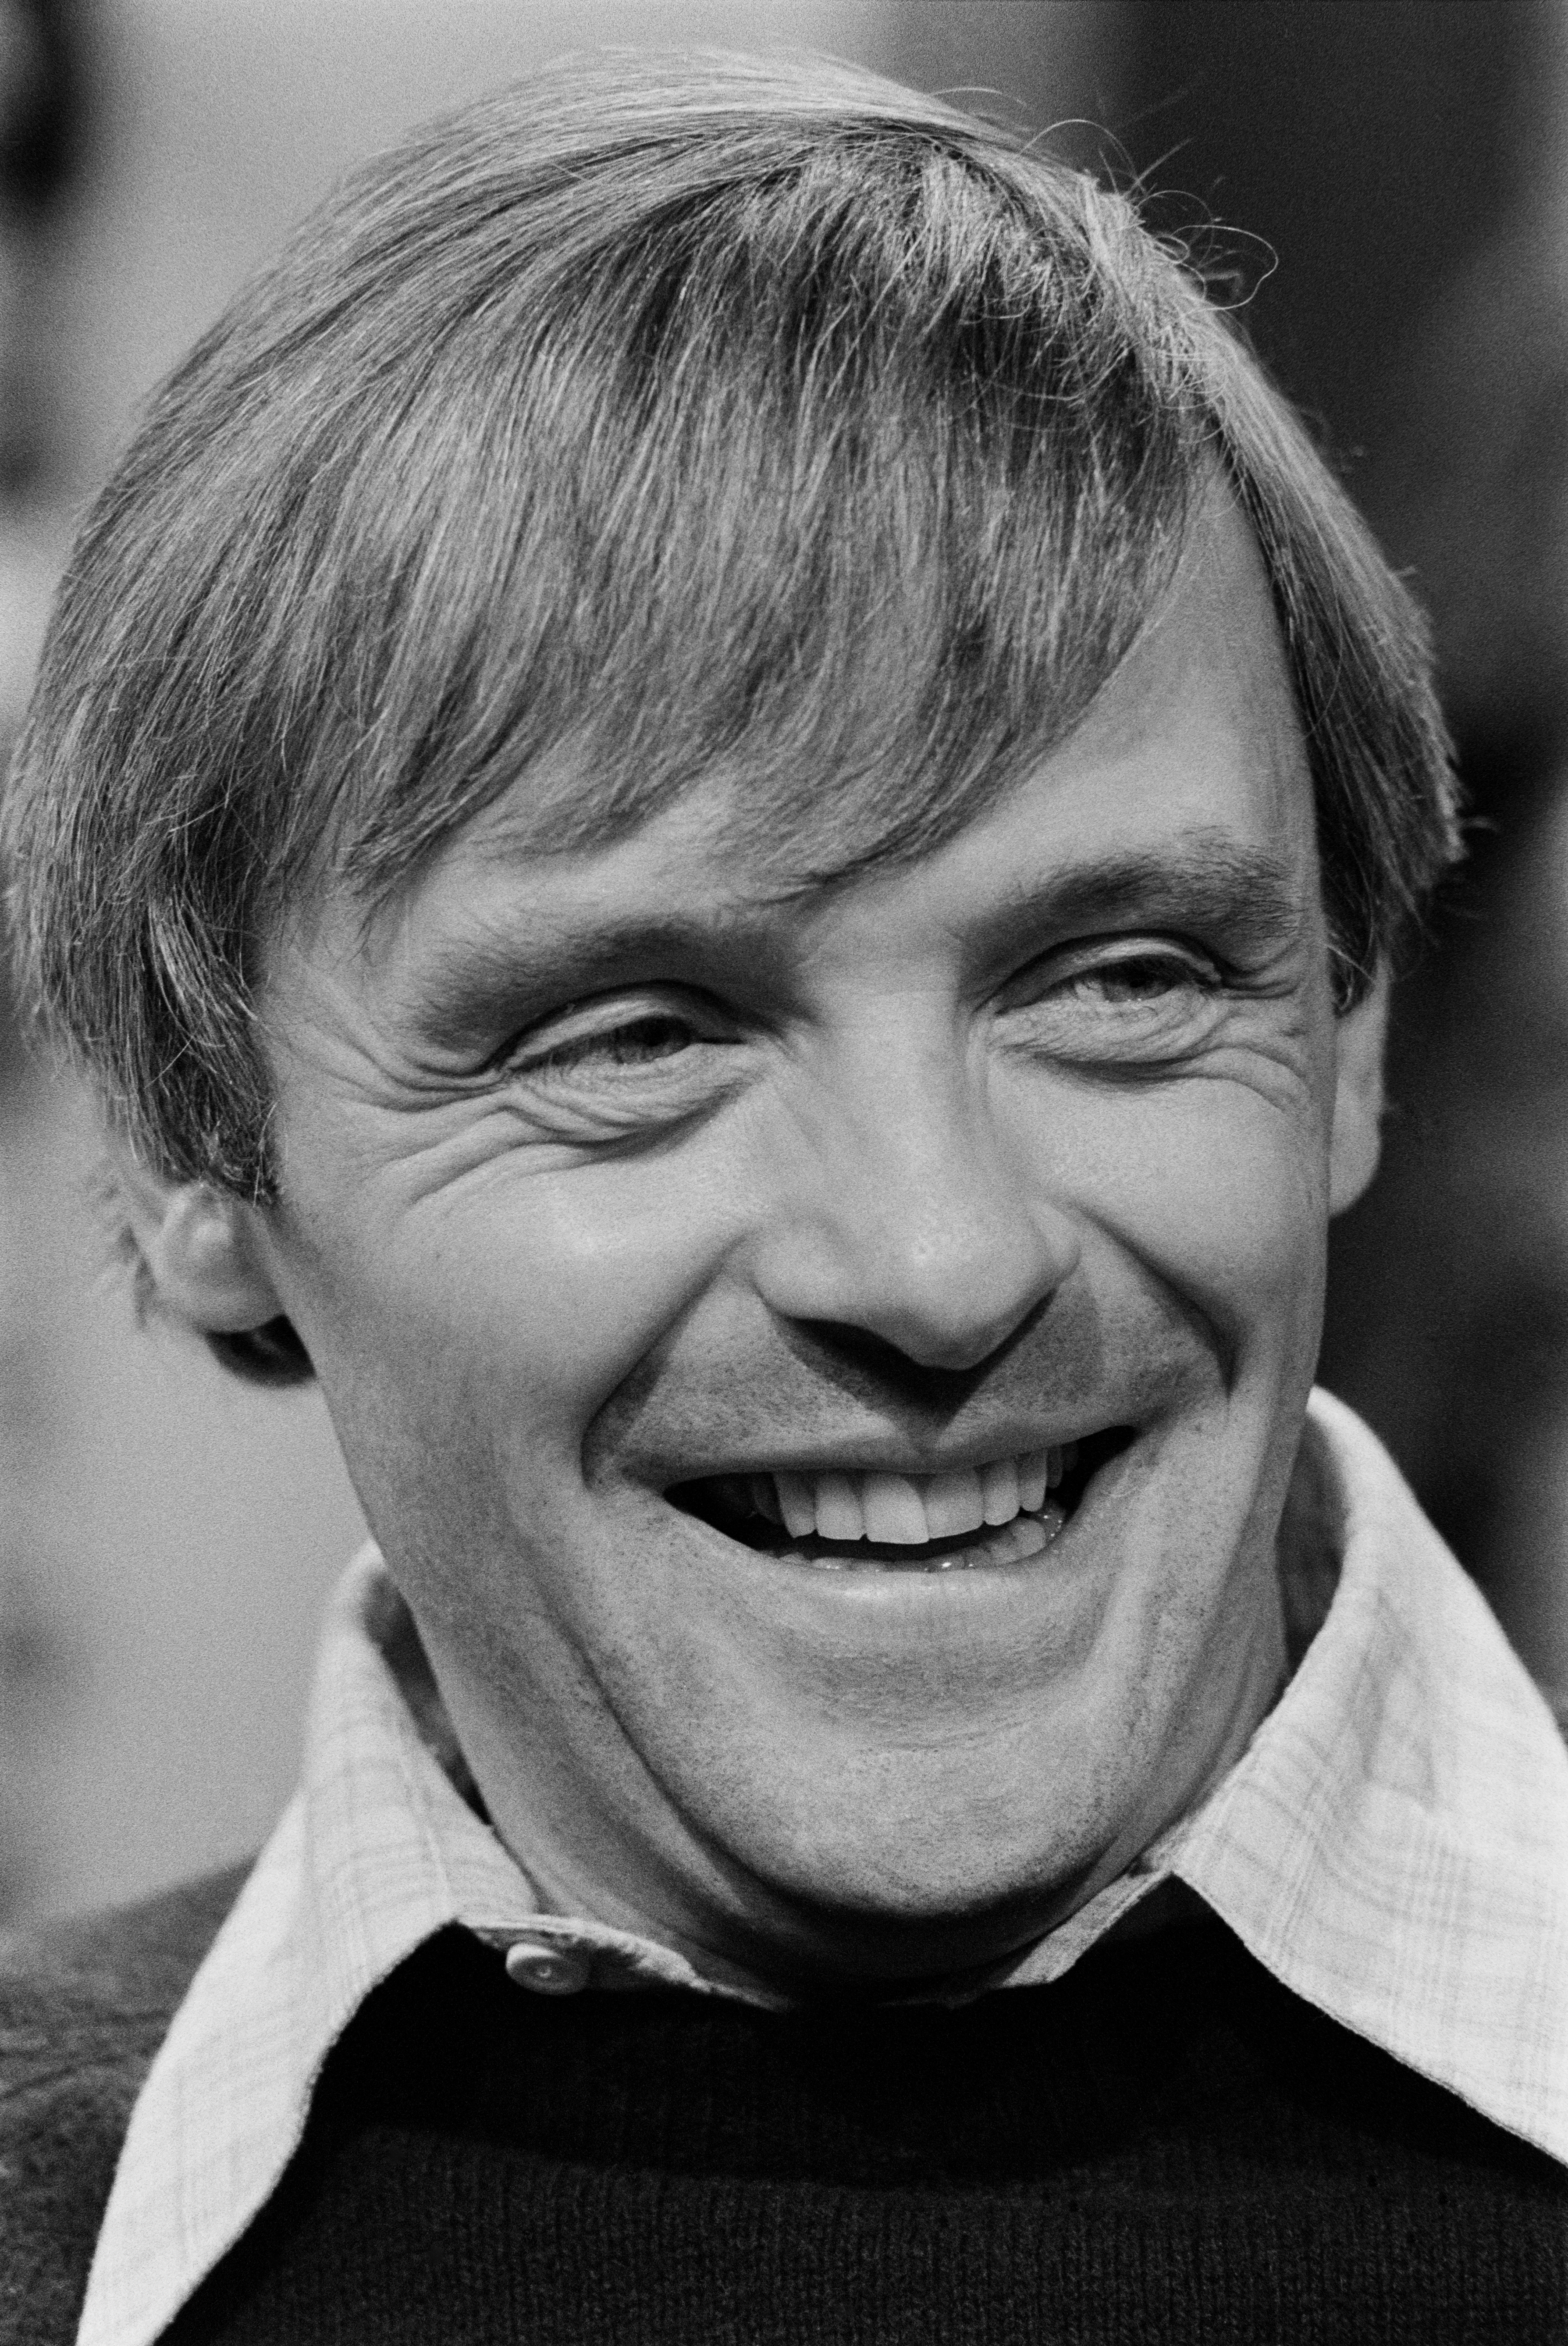 Der Schauspieler in New York City am 21. November 1978. | Quelle: Getty Images